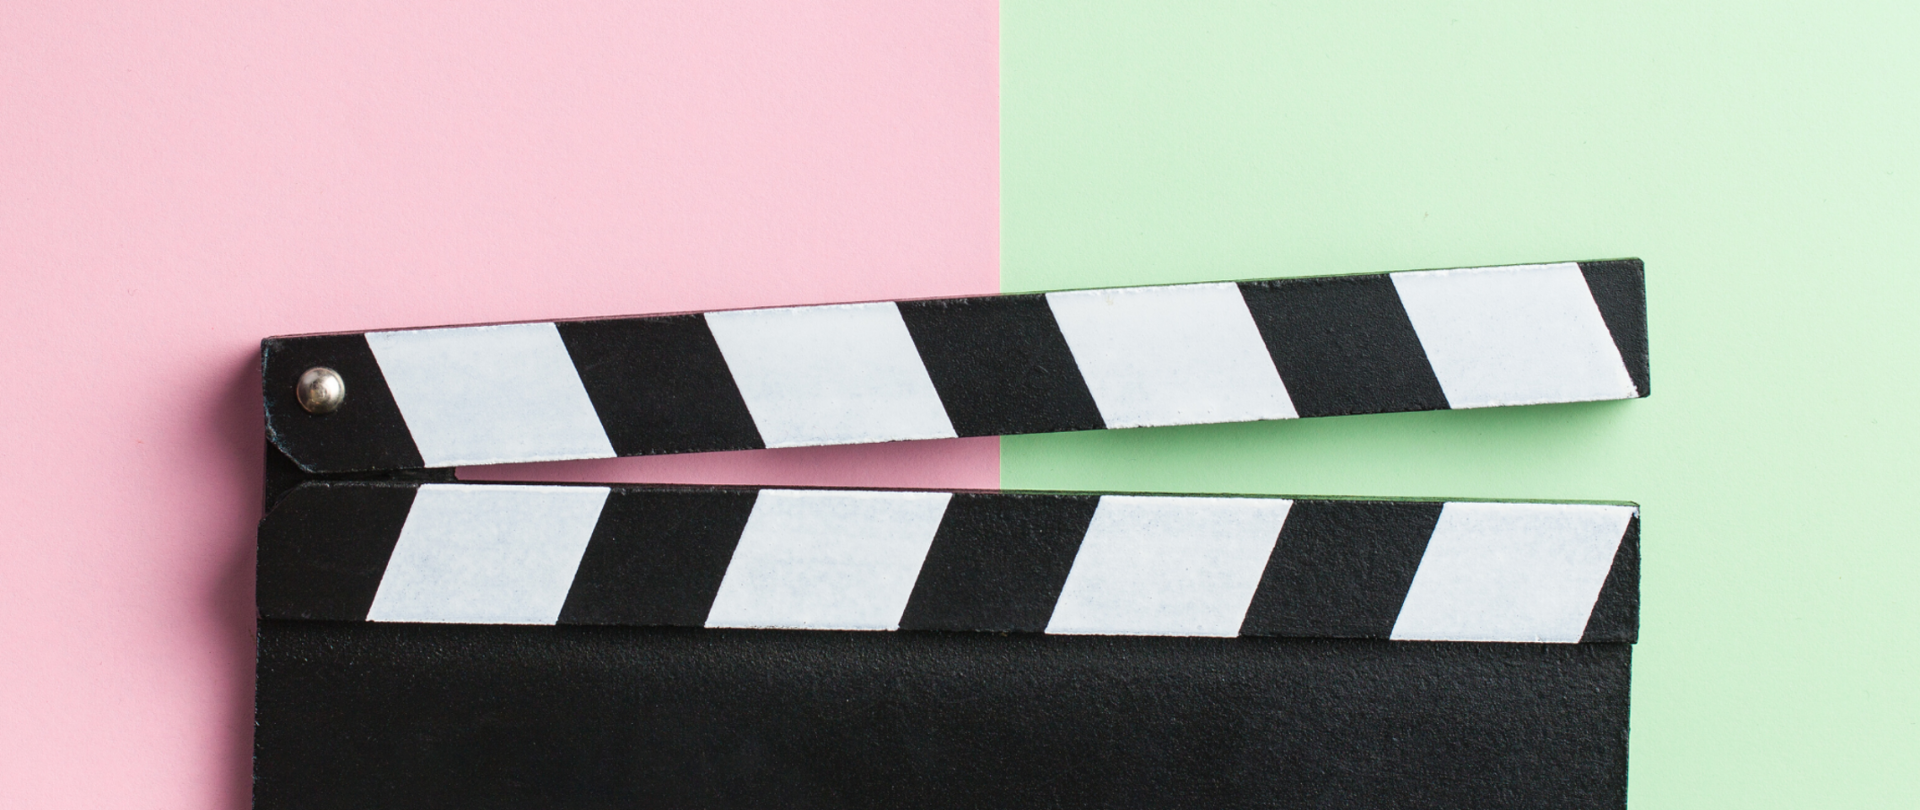 Klaps filmowy na pierwszym planie, tło podzielone na pół różowe z lewej i zielone z prawej strony.